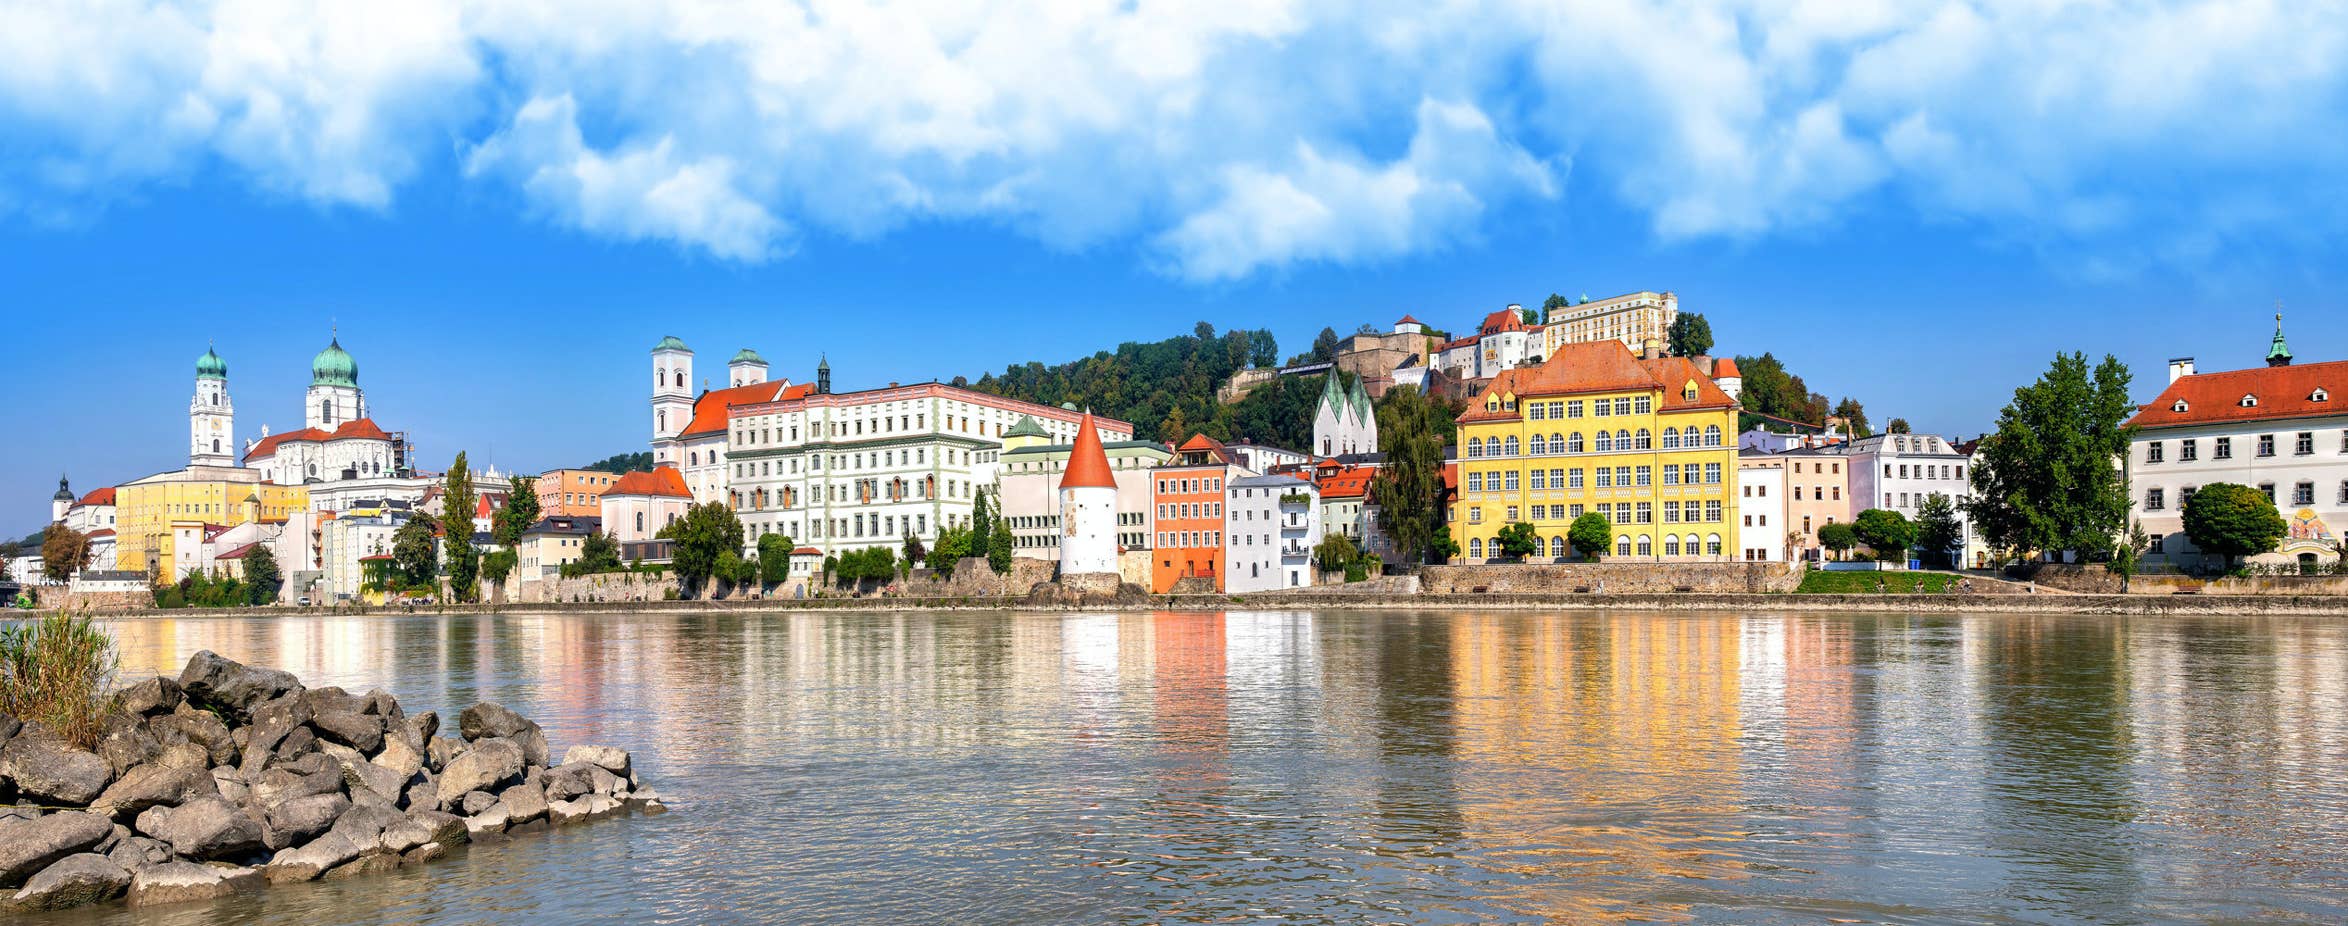 Passau on the Inn